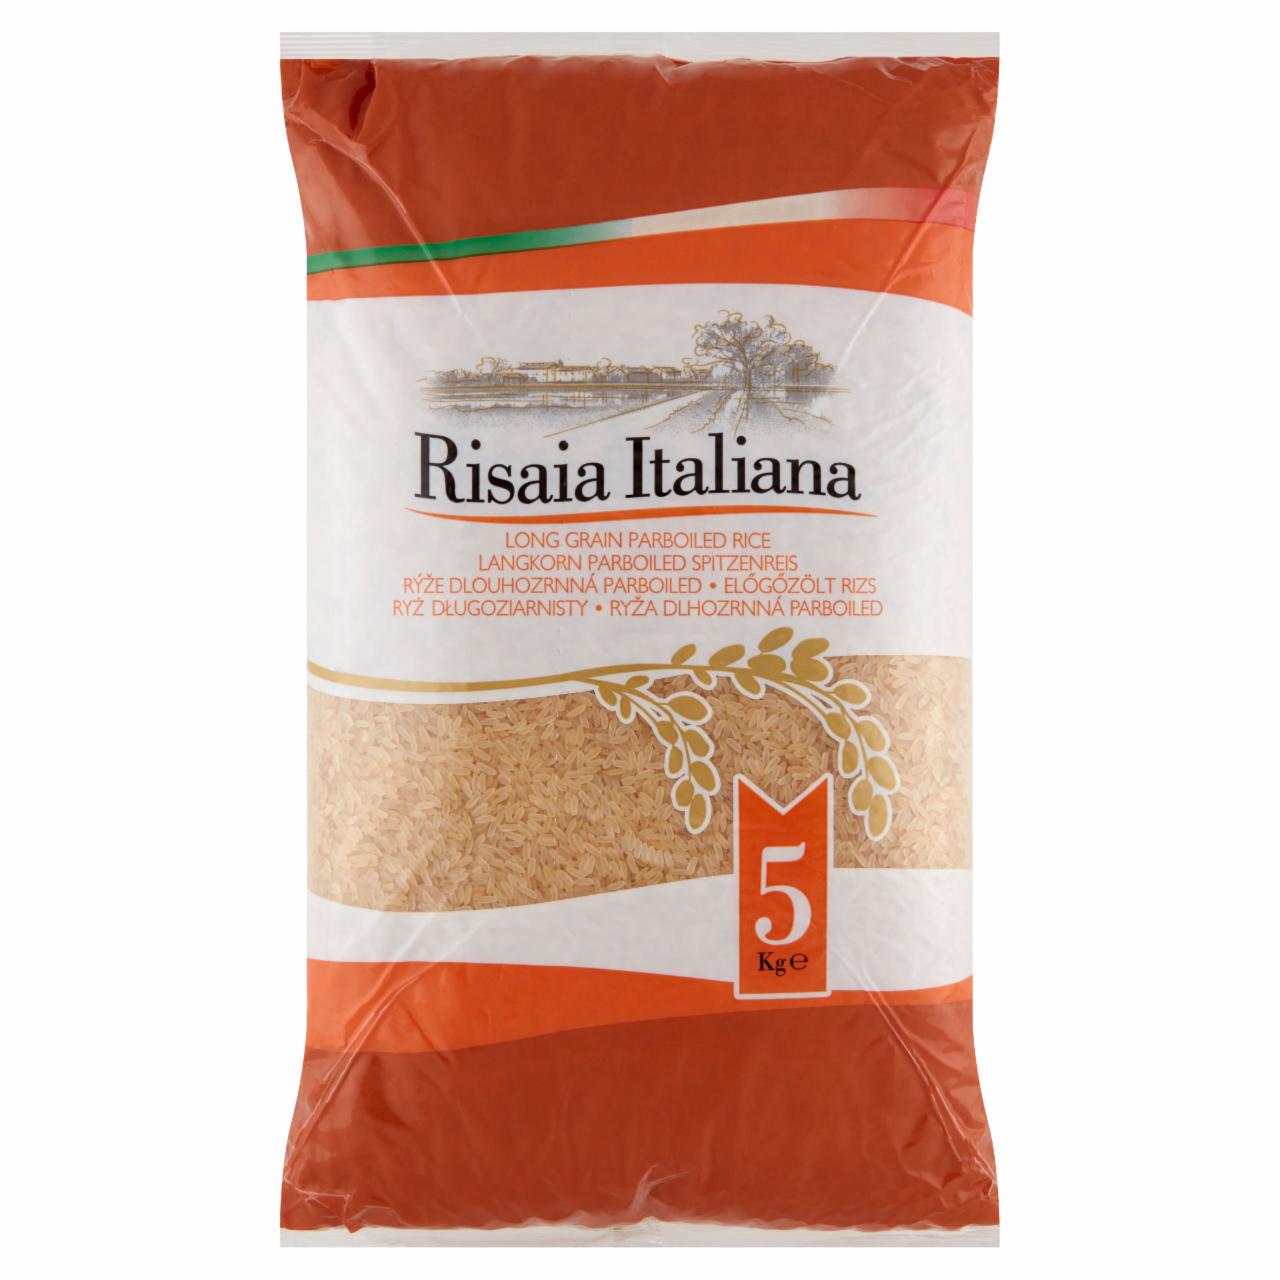 Zdjęcia - Risaia Italiana Ryż długoziarnisty 5 kg